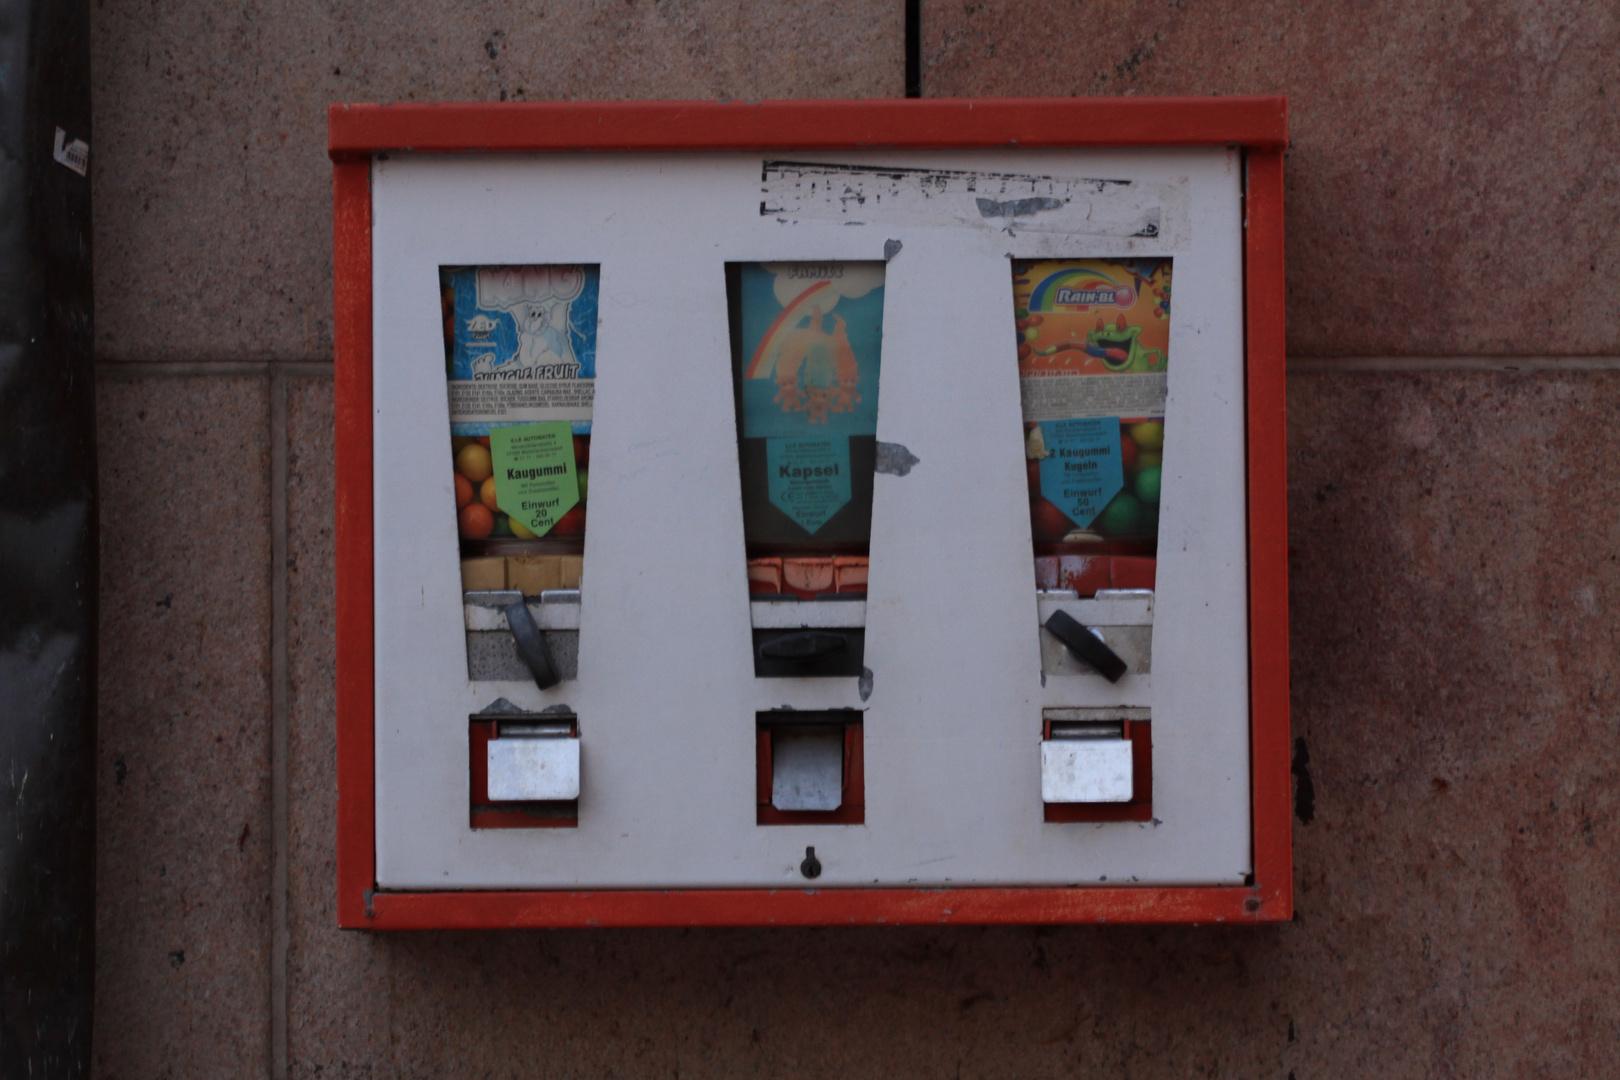 Kaugummiautomat in Greiz